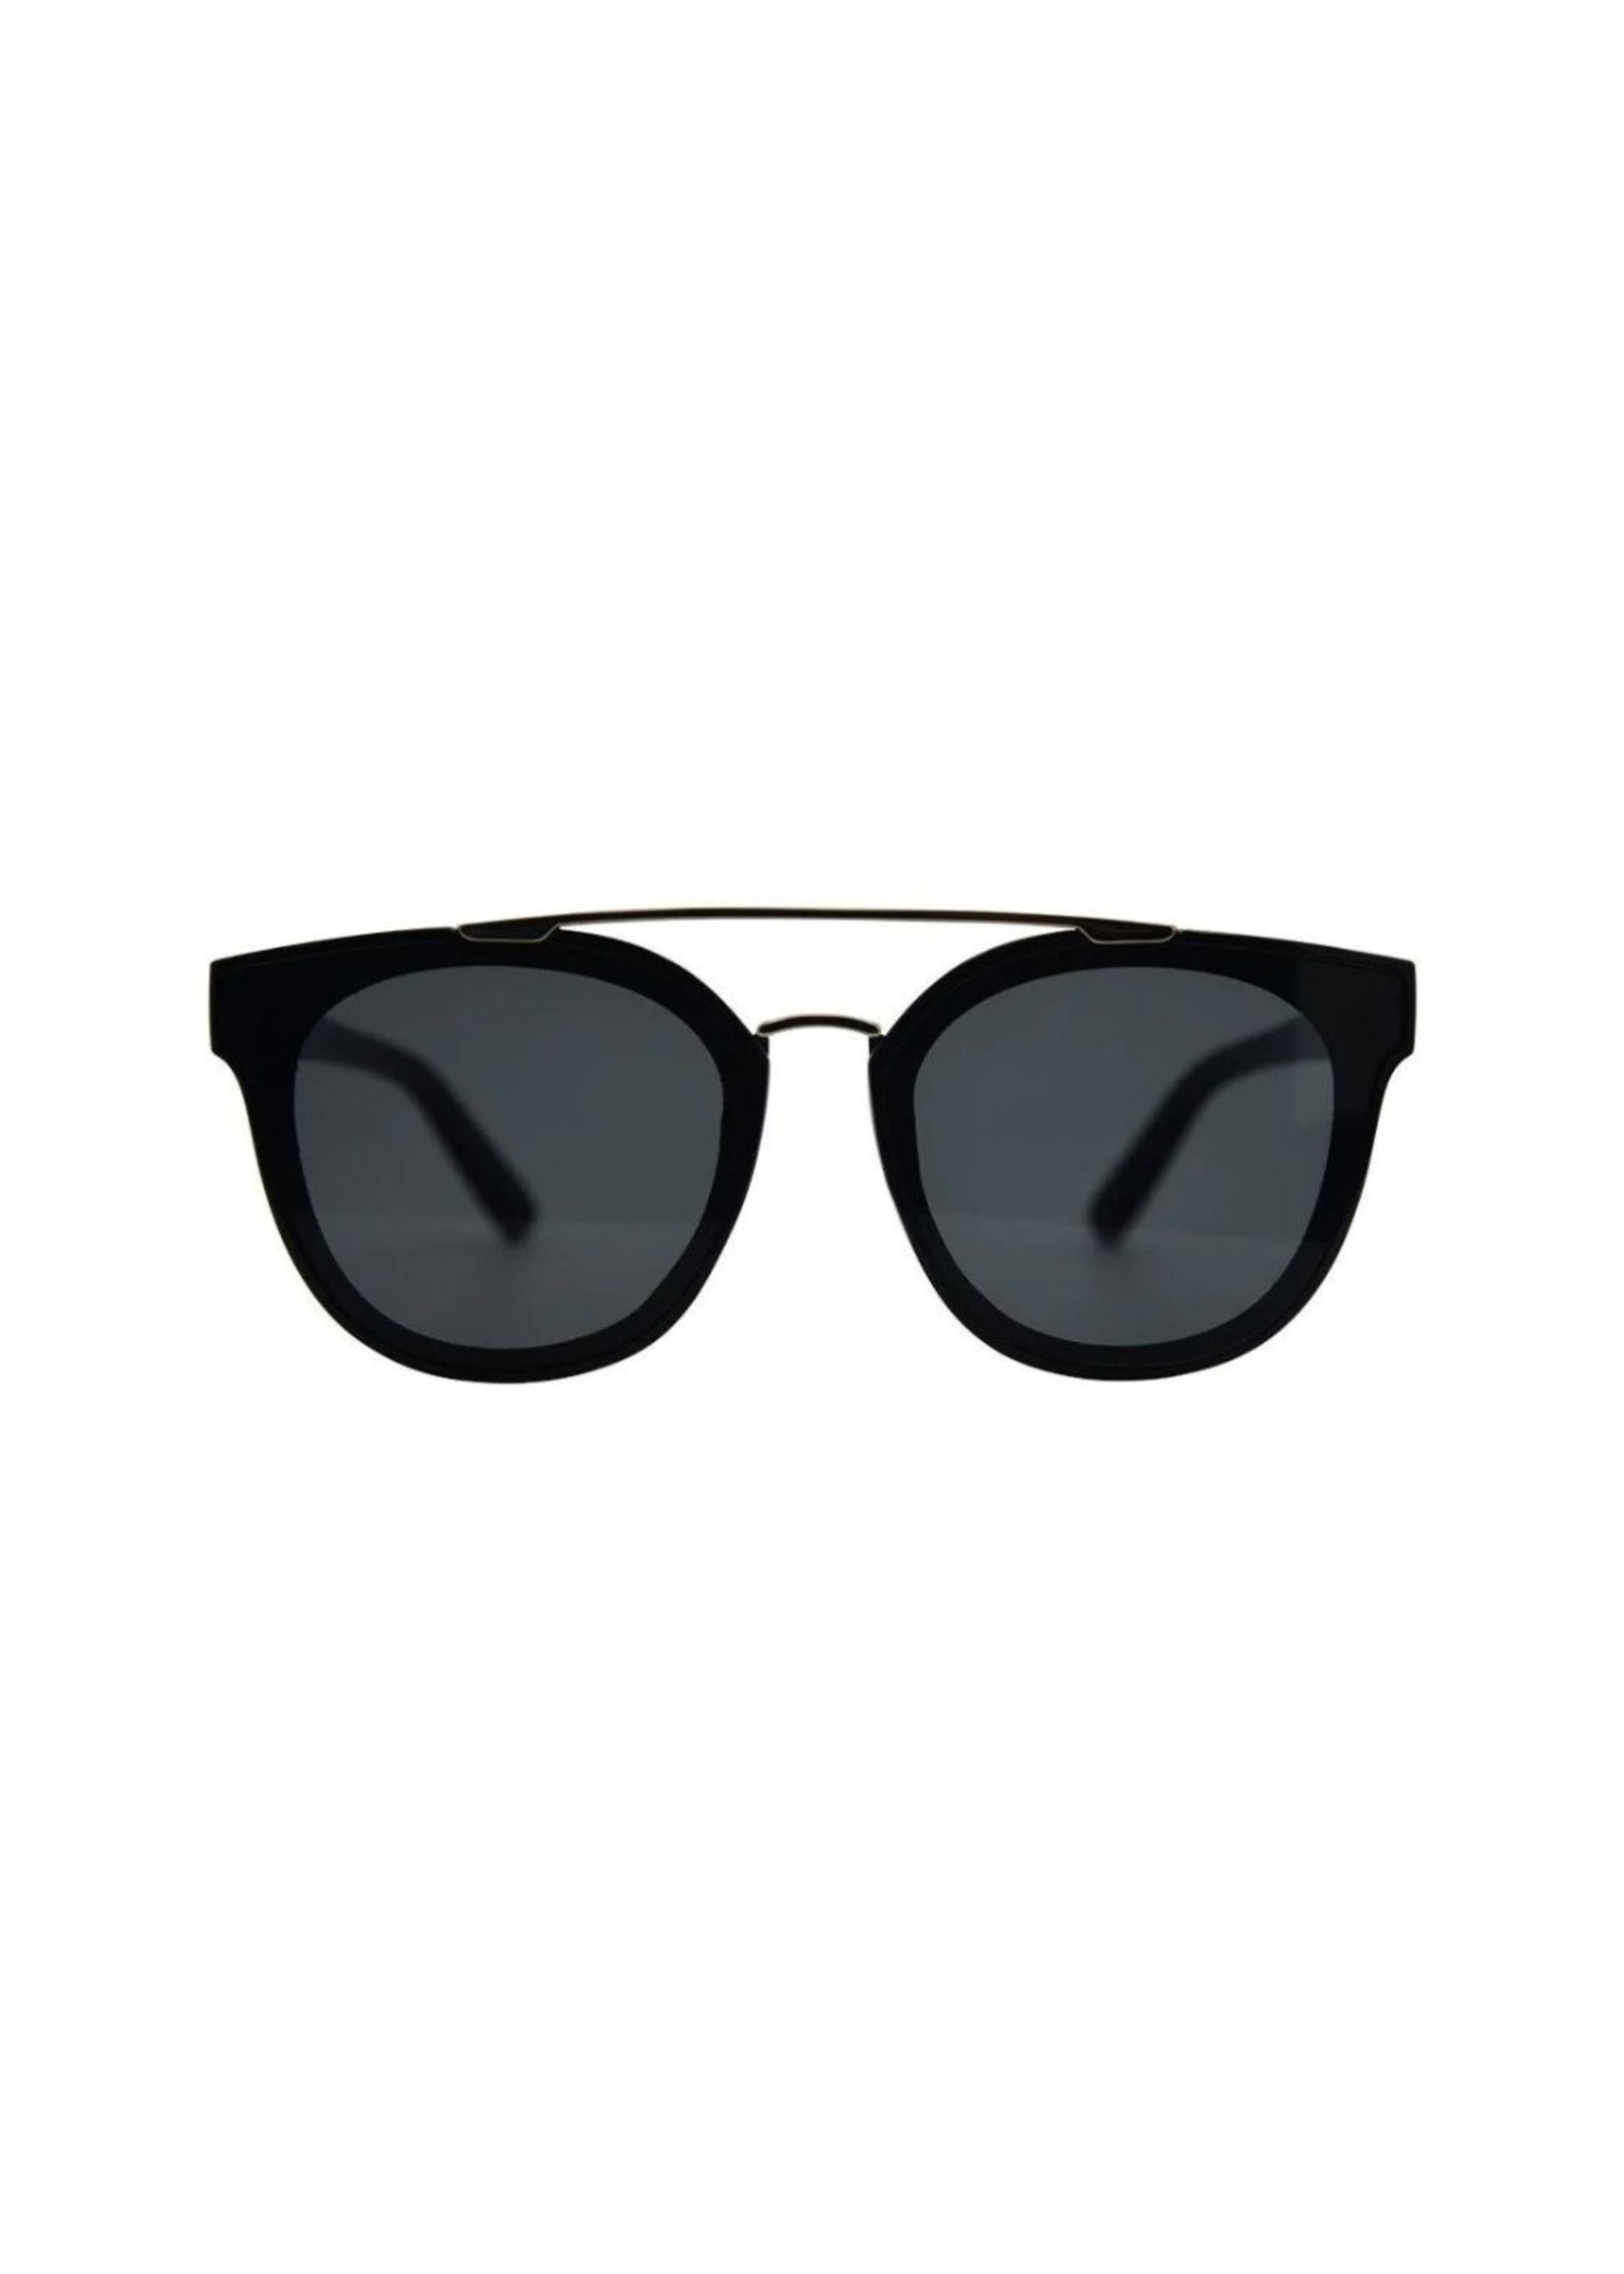 iSea Topanga Sunglasses